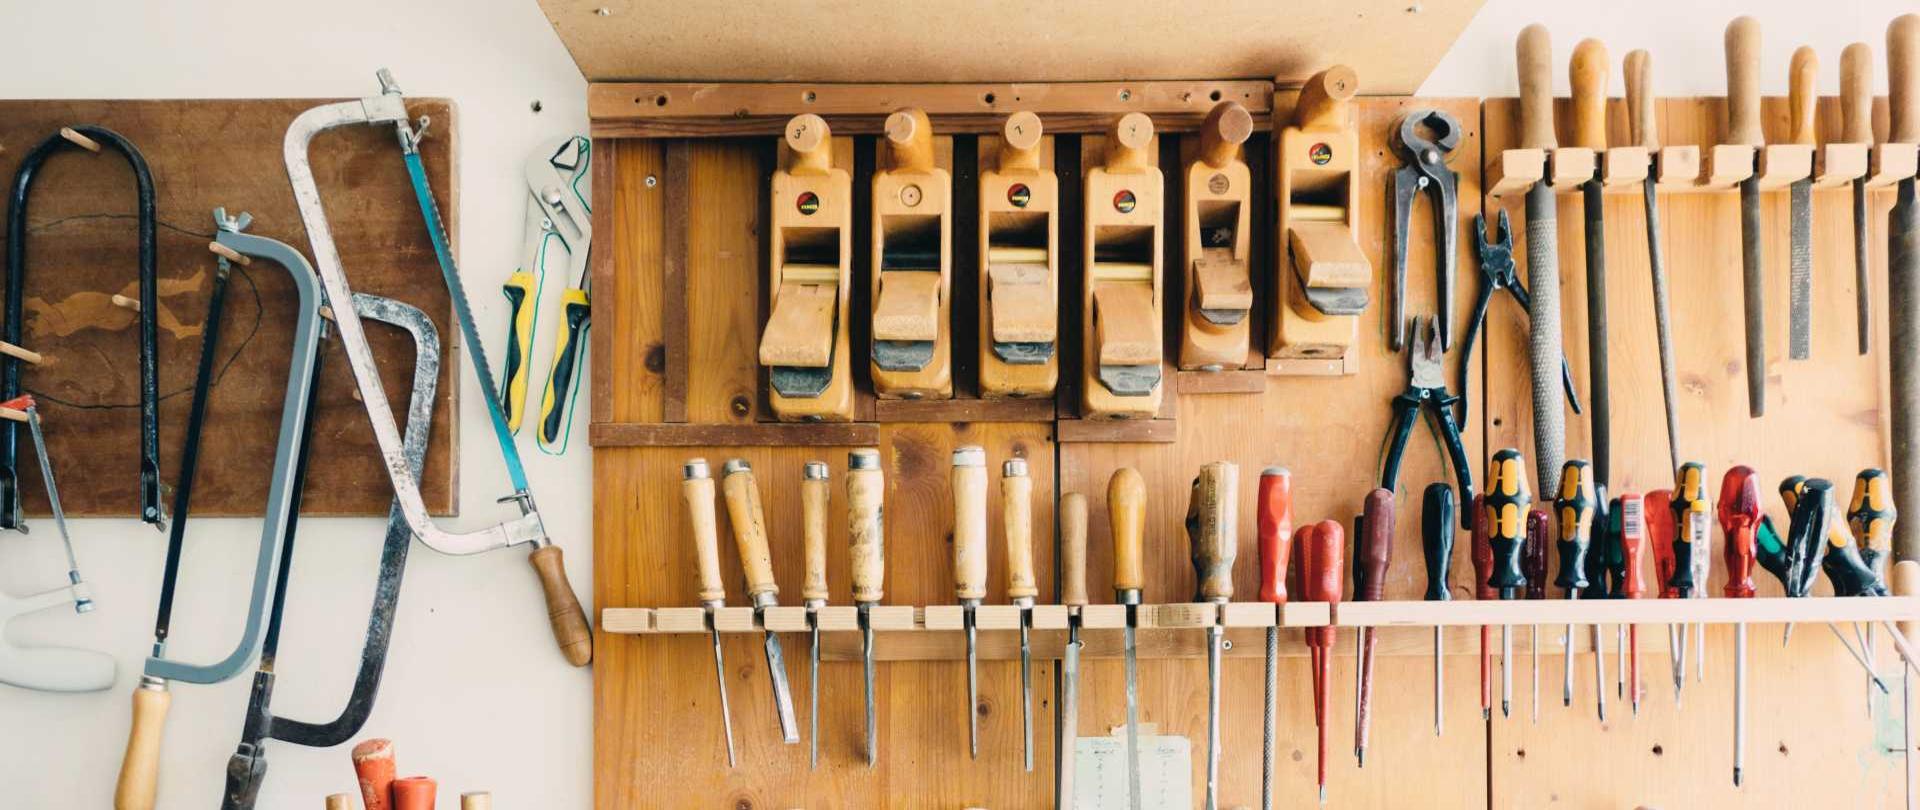 fotografia przedstawia warsztat stolarski z narzędziami stolarskimi zawieszonymi na drewnianych półkach